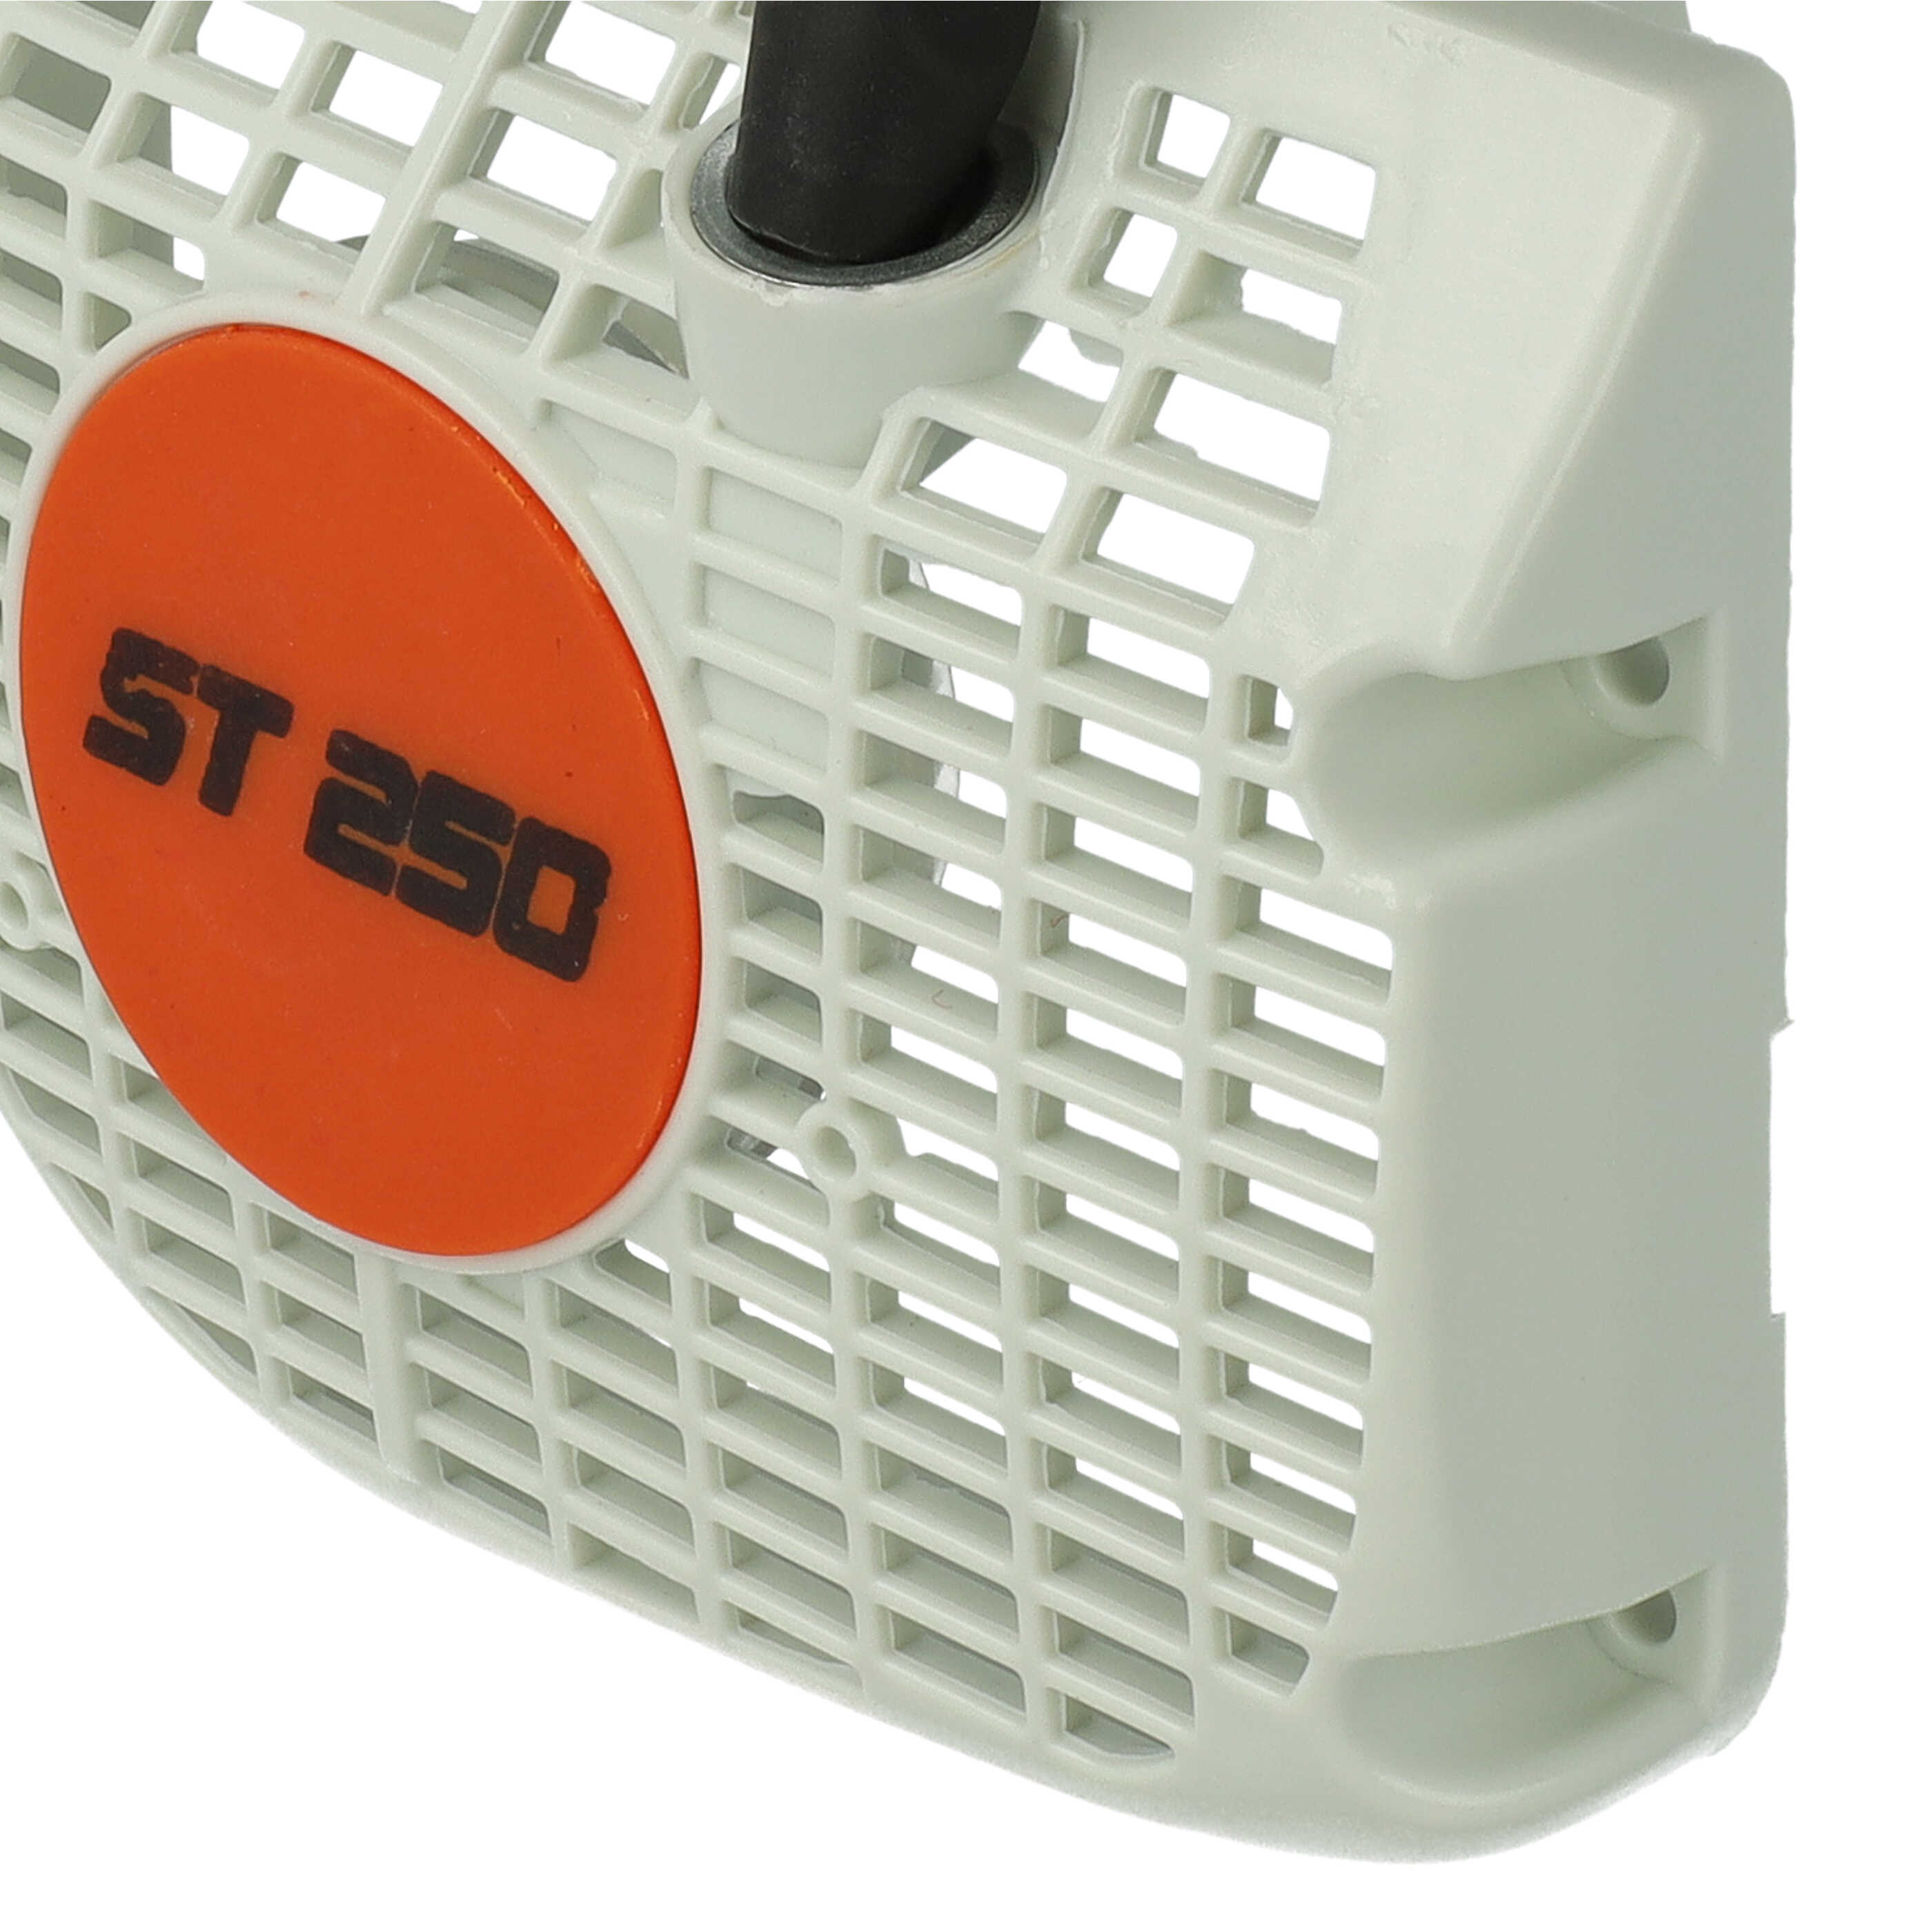 Seilzugstarter als Ersatz für Stihl 1123-080-1802 passend für Stihl Motorsäge - 16,7 x 13,8 x 3,8 cm